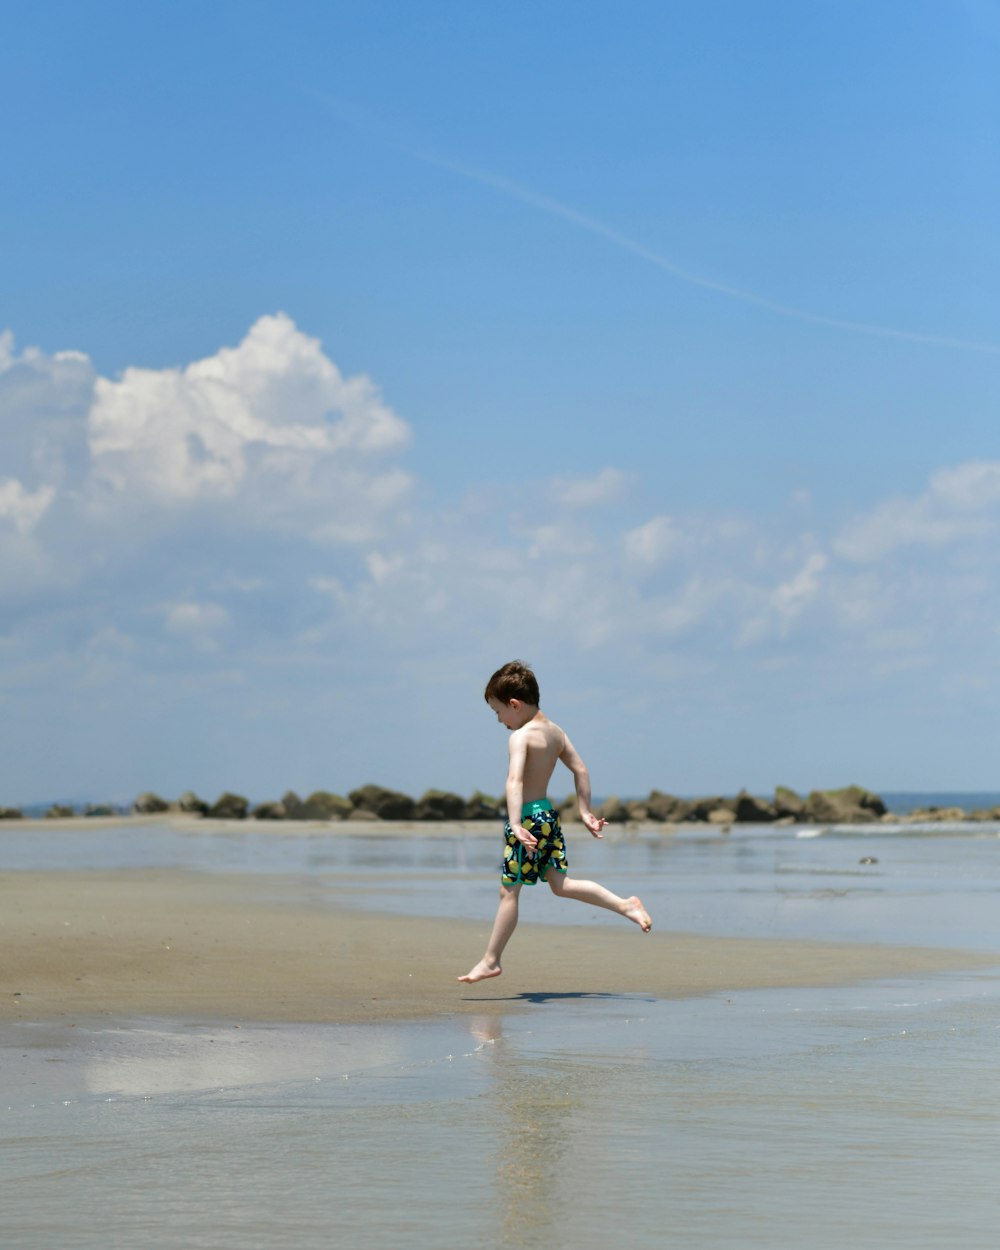 フリスビーを持ってビーチを走る少年